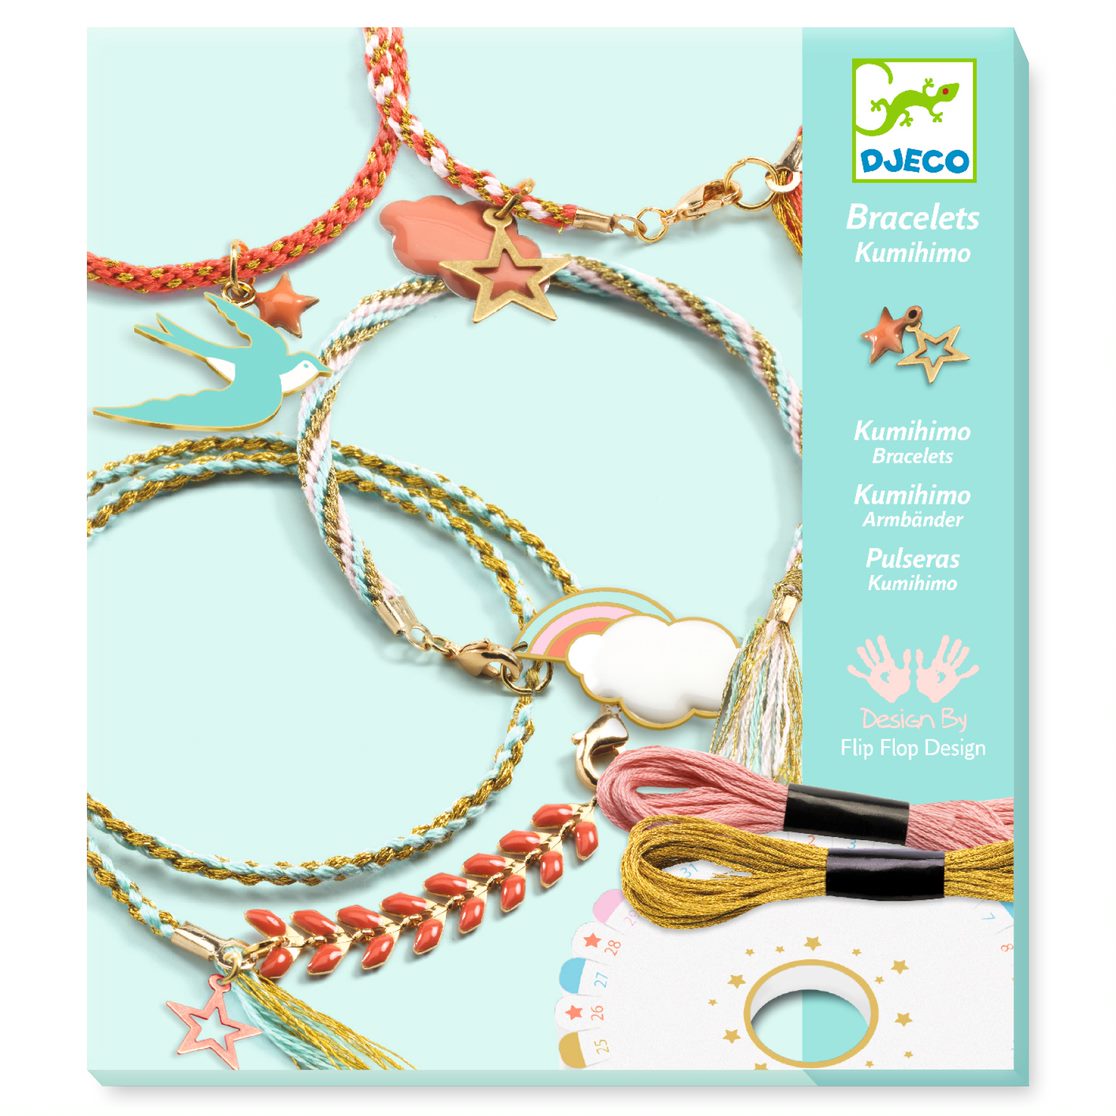 Djeco celeste kumihimo bracelets kit – Dilly Dally Kids